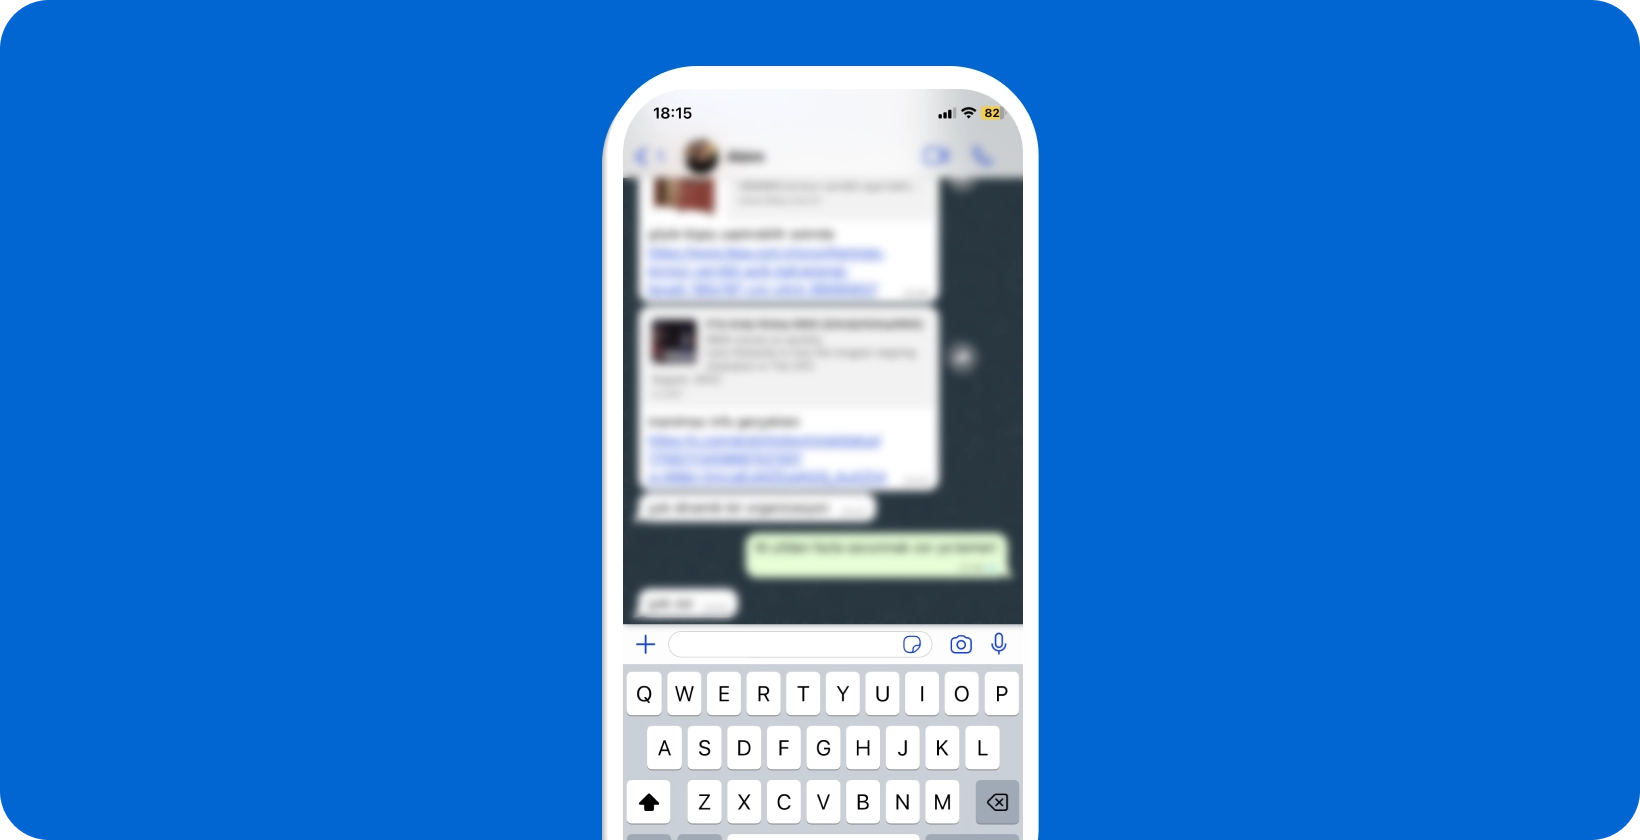 Smartphone exibindo uma conversa ativa WhatsApp com o teclado aberto, pronto para ditado de voz.